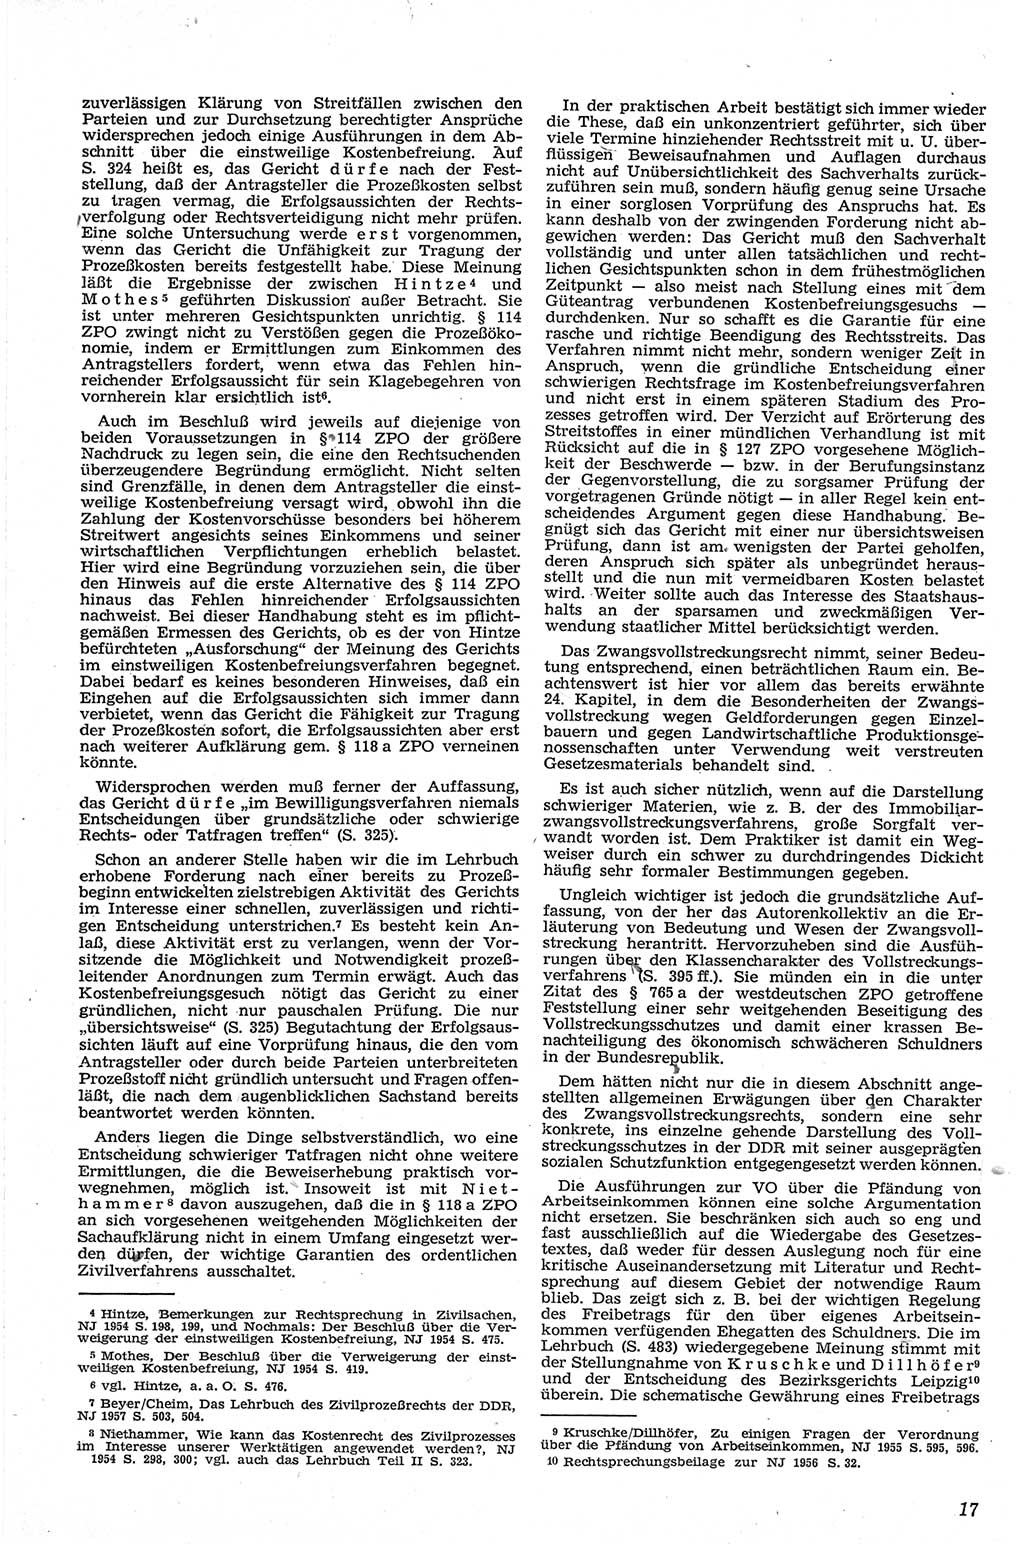 Neue Justiz (NJ), Zeitschrift für Recht und Rechtswissenschaft [Deutsche Demokratische Republik (DDR)], 13. Jahrgang 1959, Seite 17 (NJ DDR 1959, S. 17)